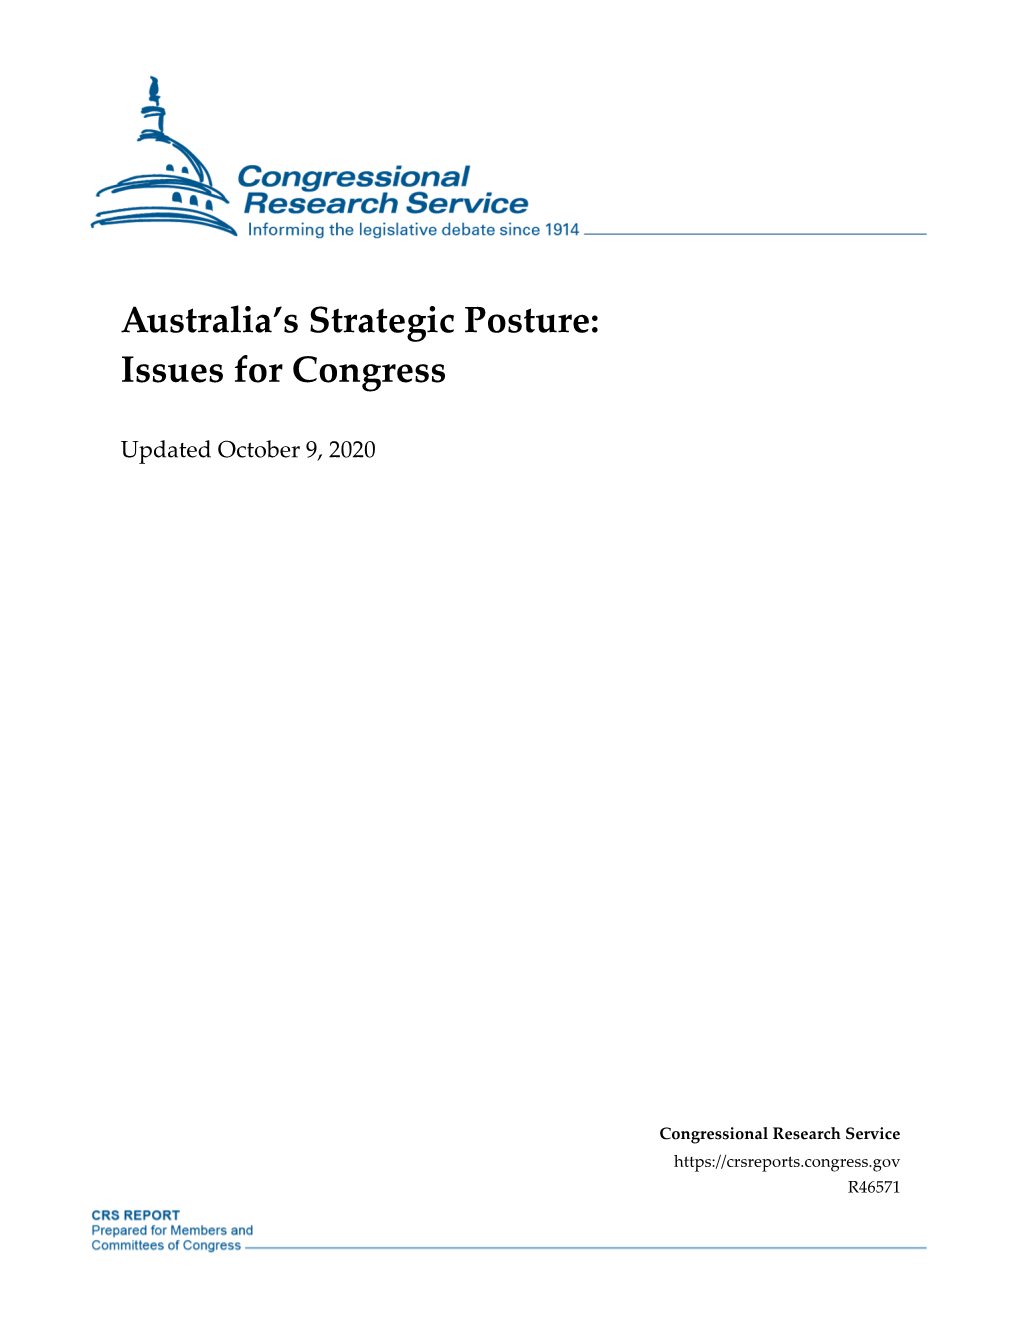 Australia's Strategic Posture